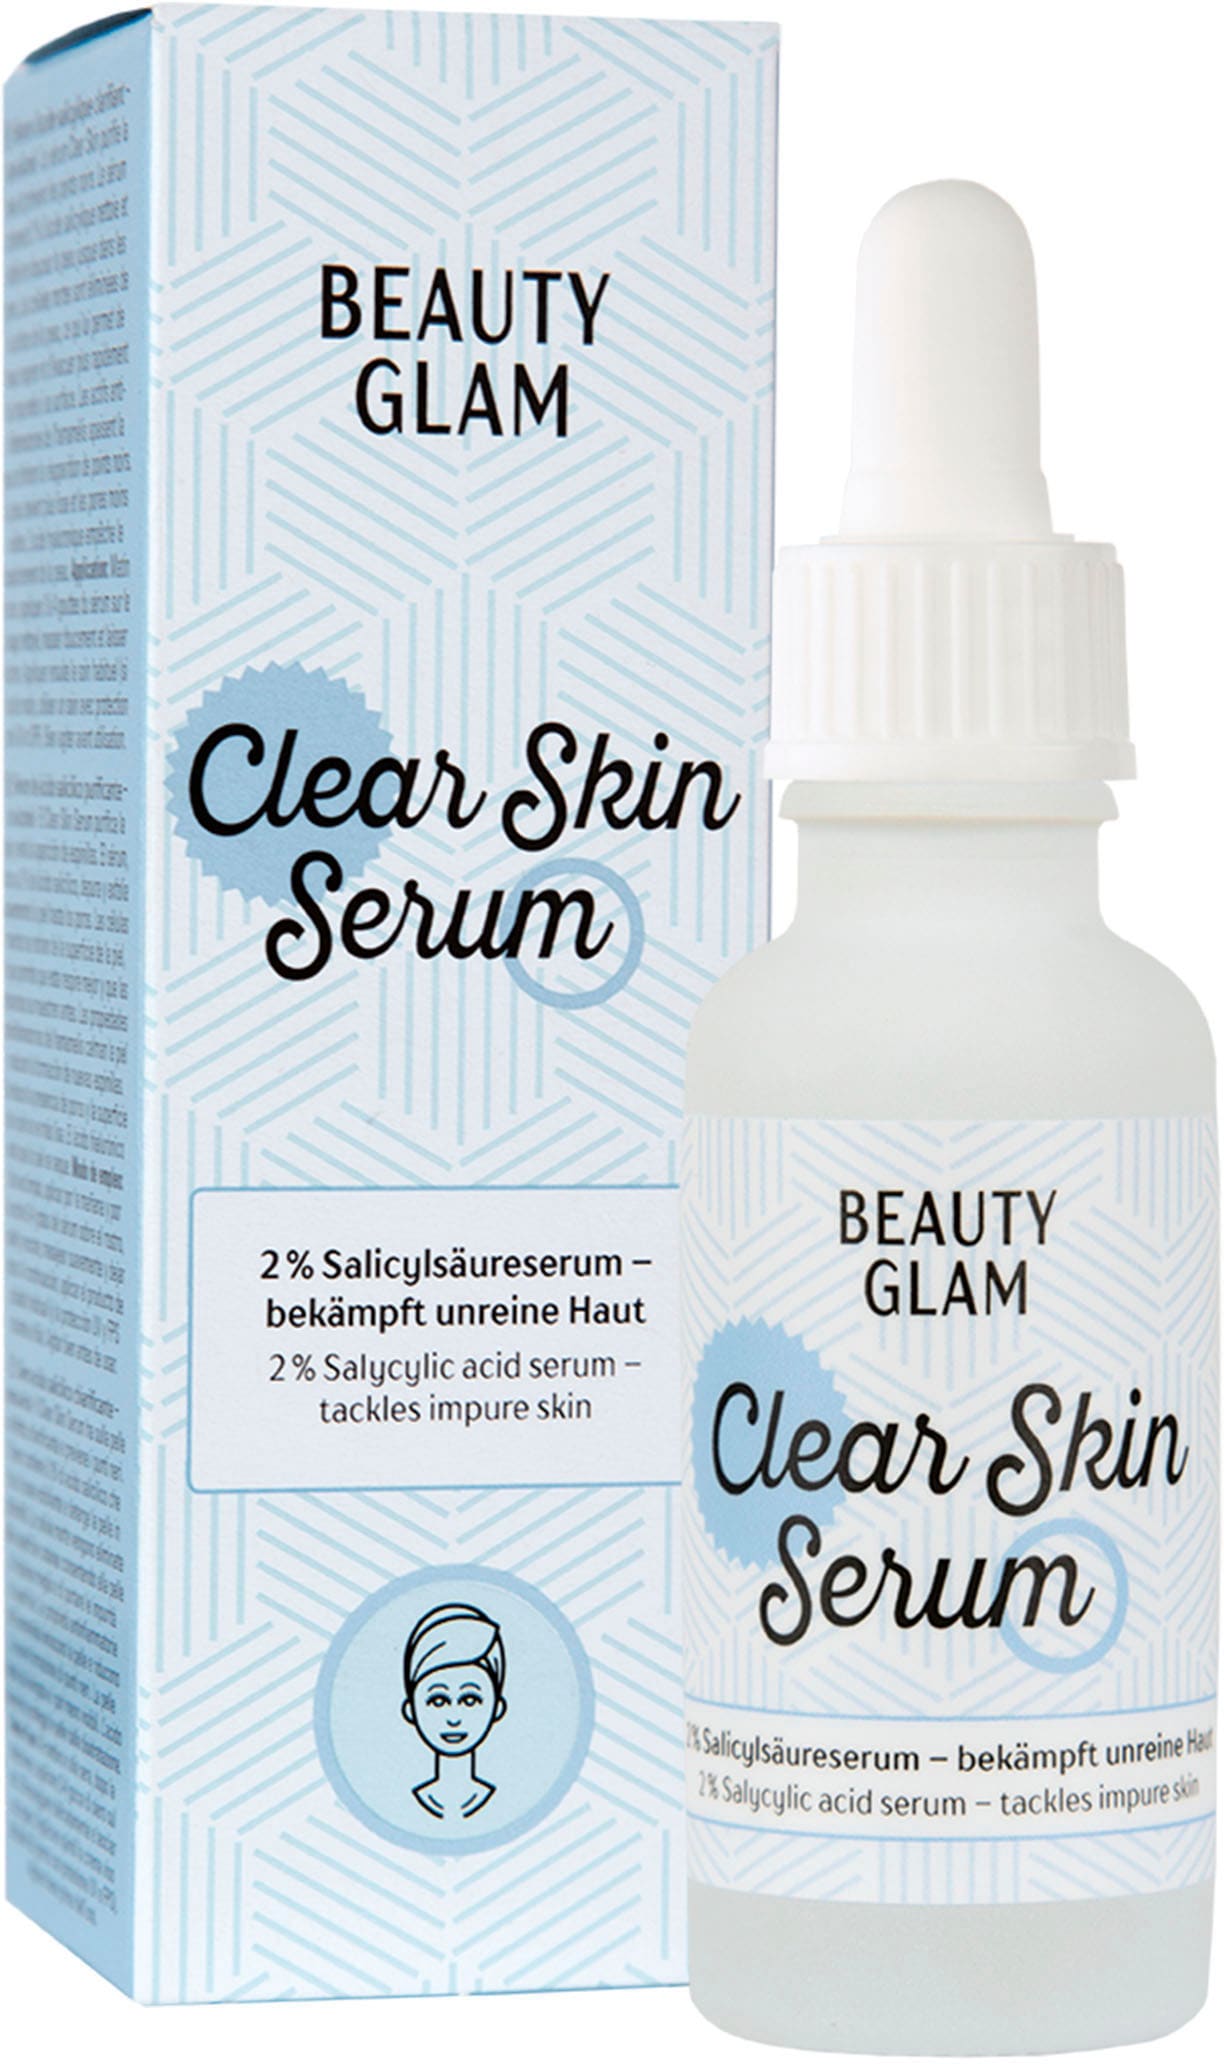 BEAUTY GLAM Gesichtsserum »Beauty kaufen Clear Shop OTTO Glam im Skin Serum« Online